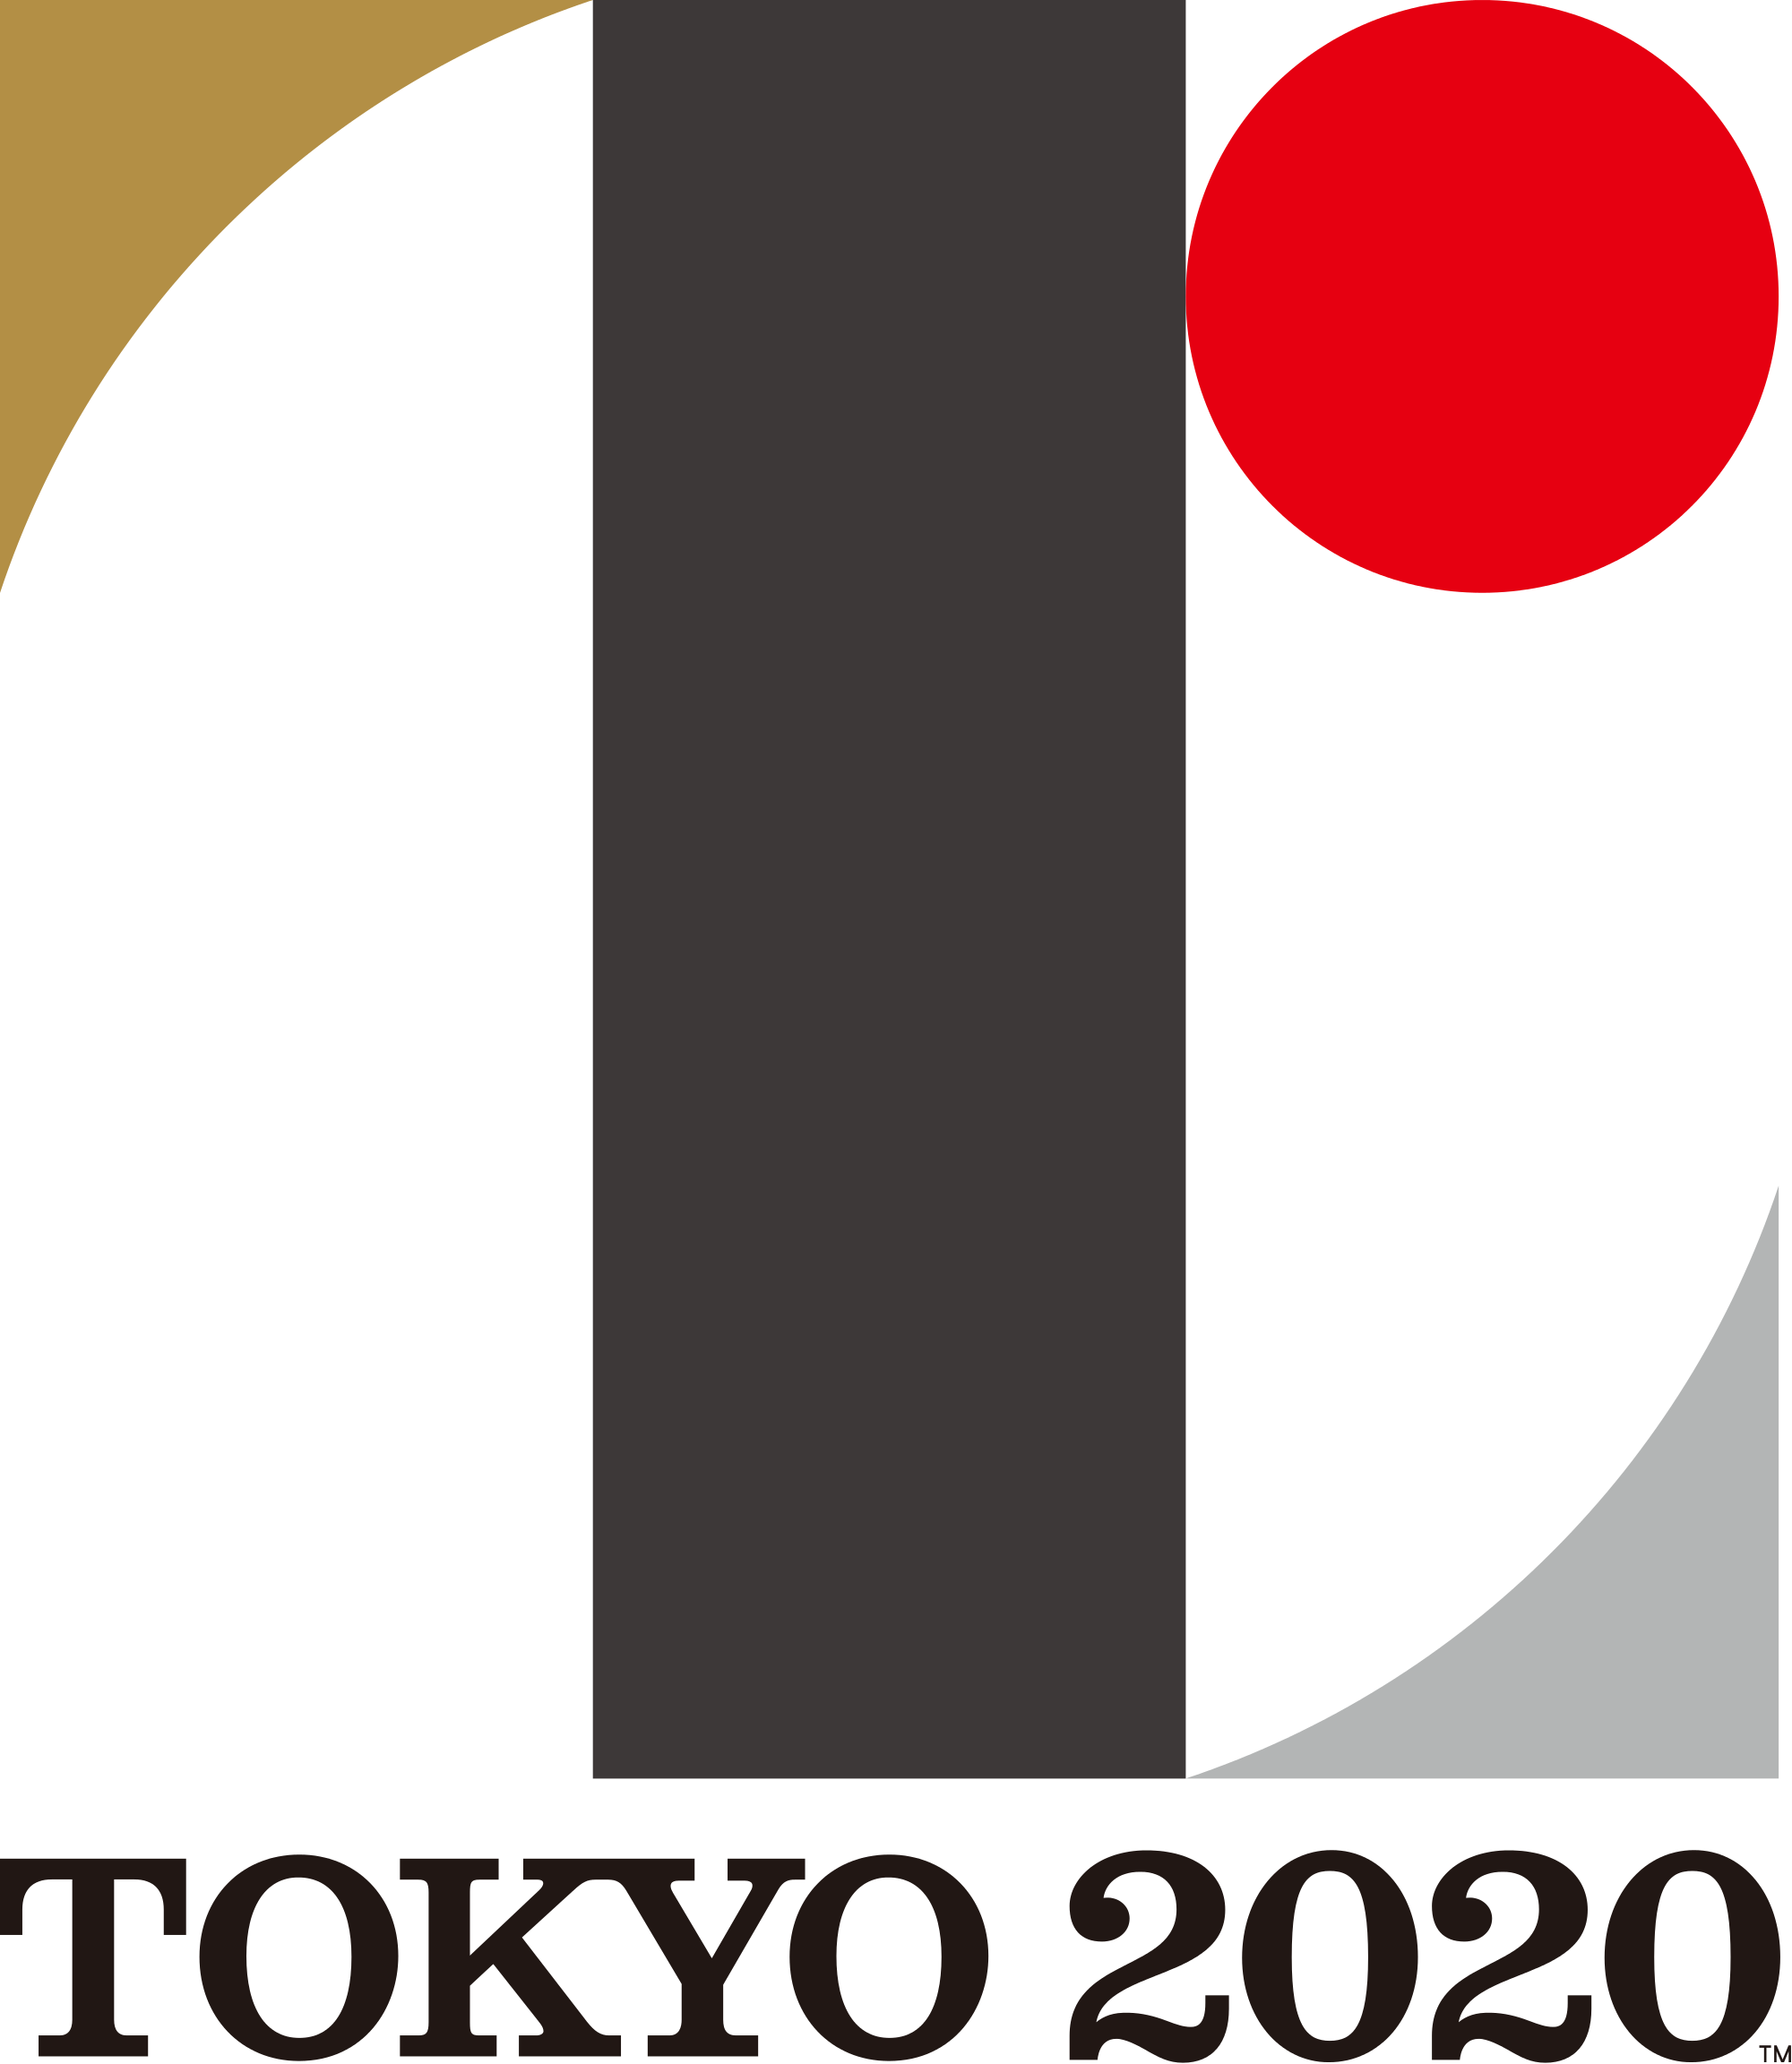 Tokyo 2020 PNG-PlusPNG.com-50